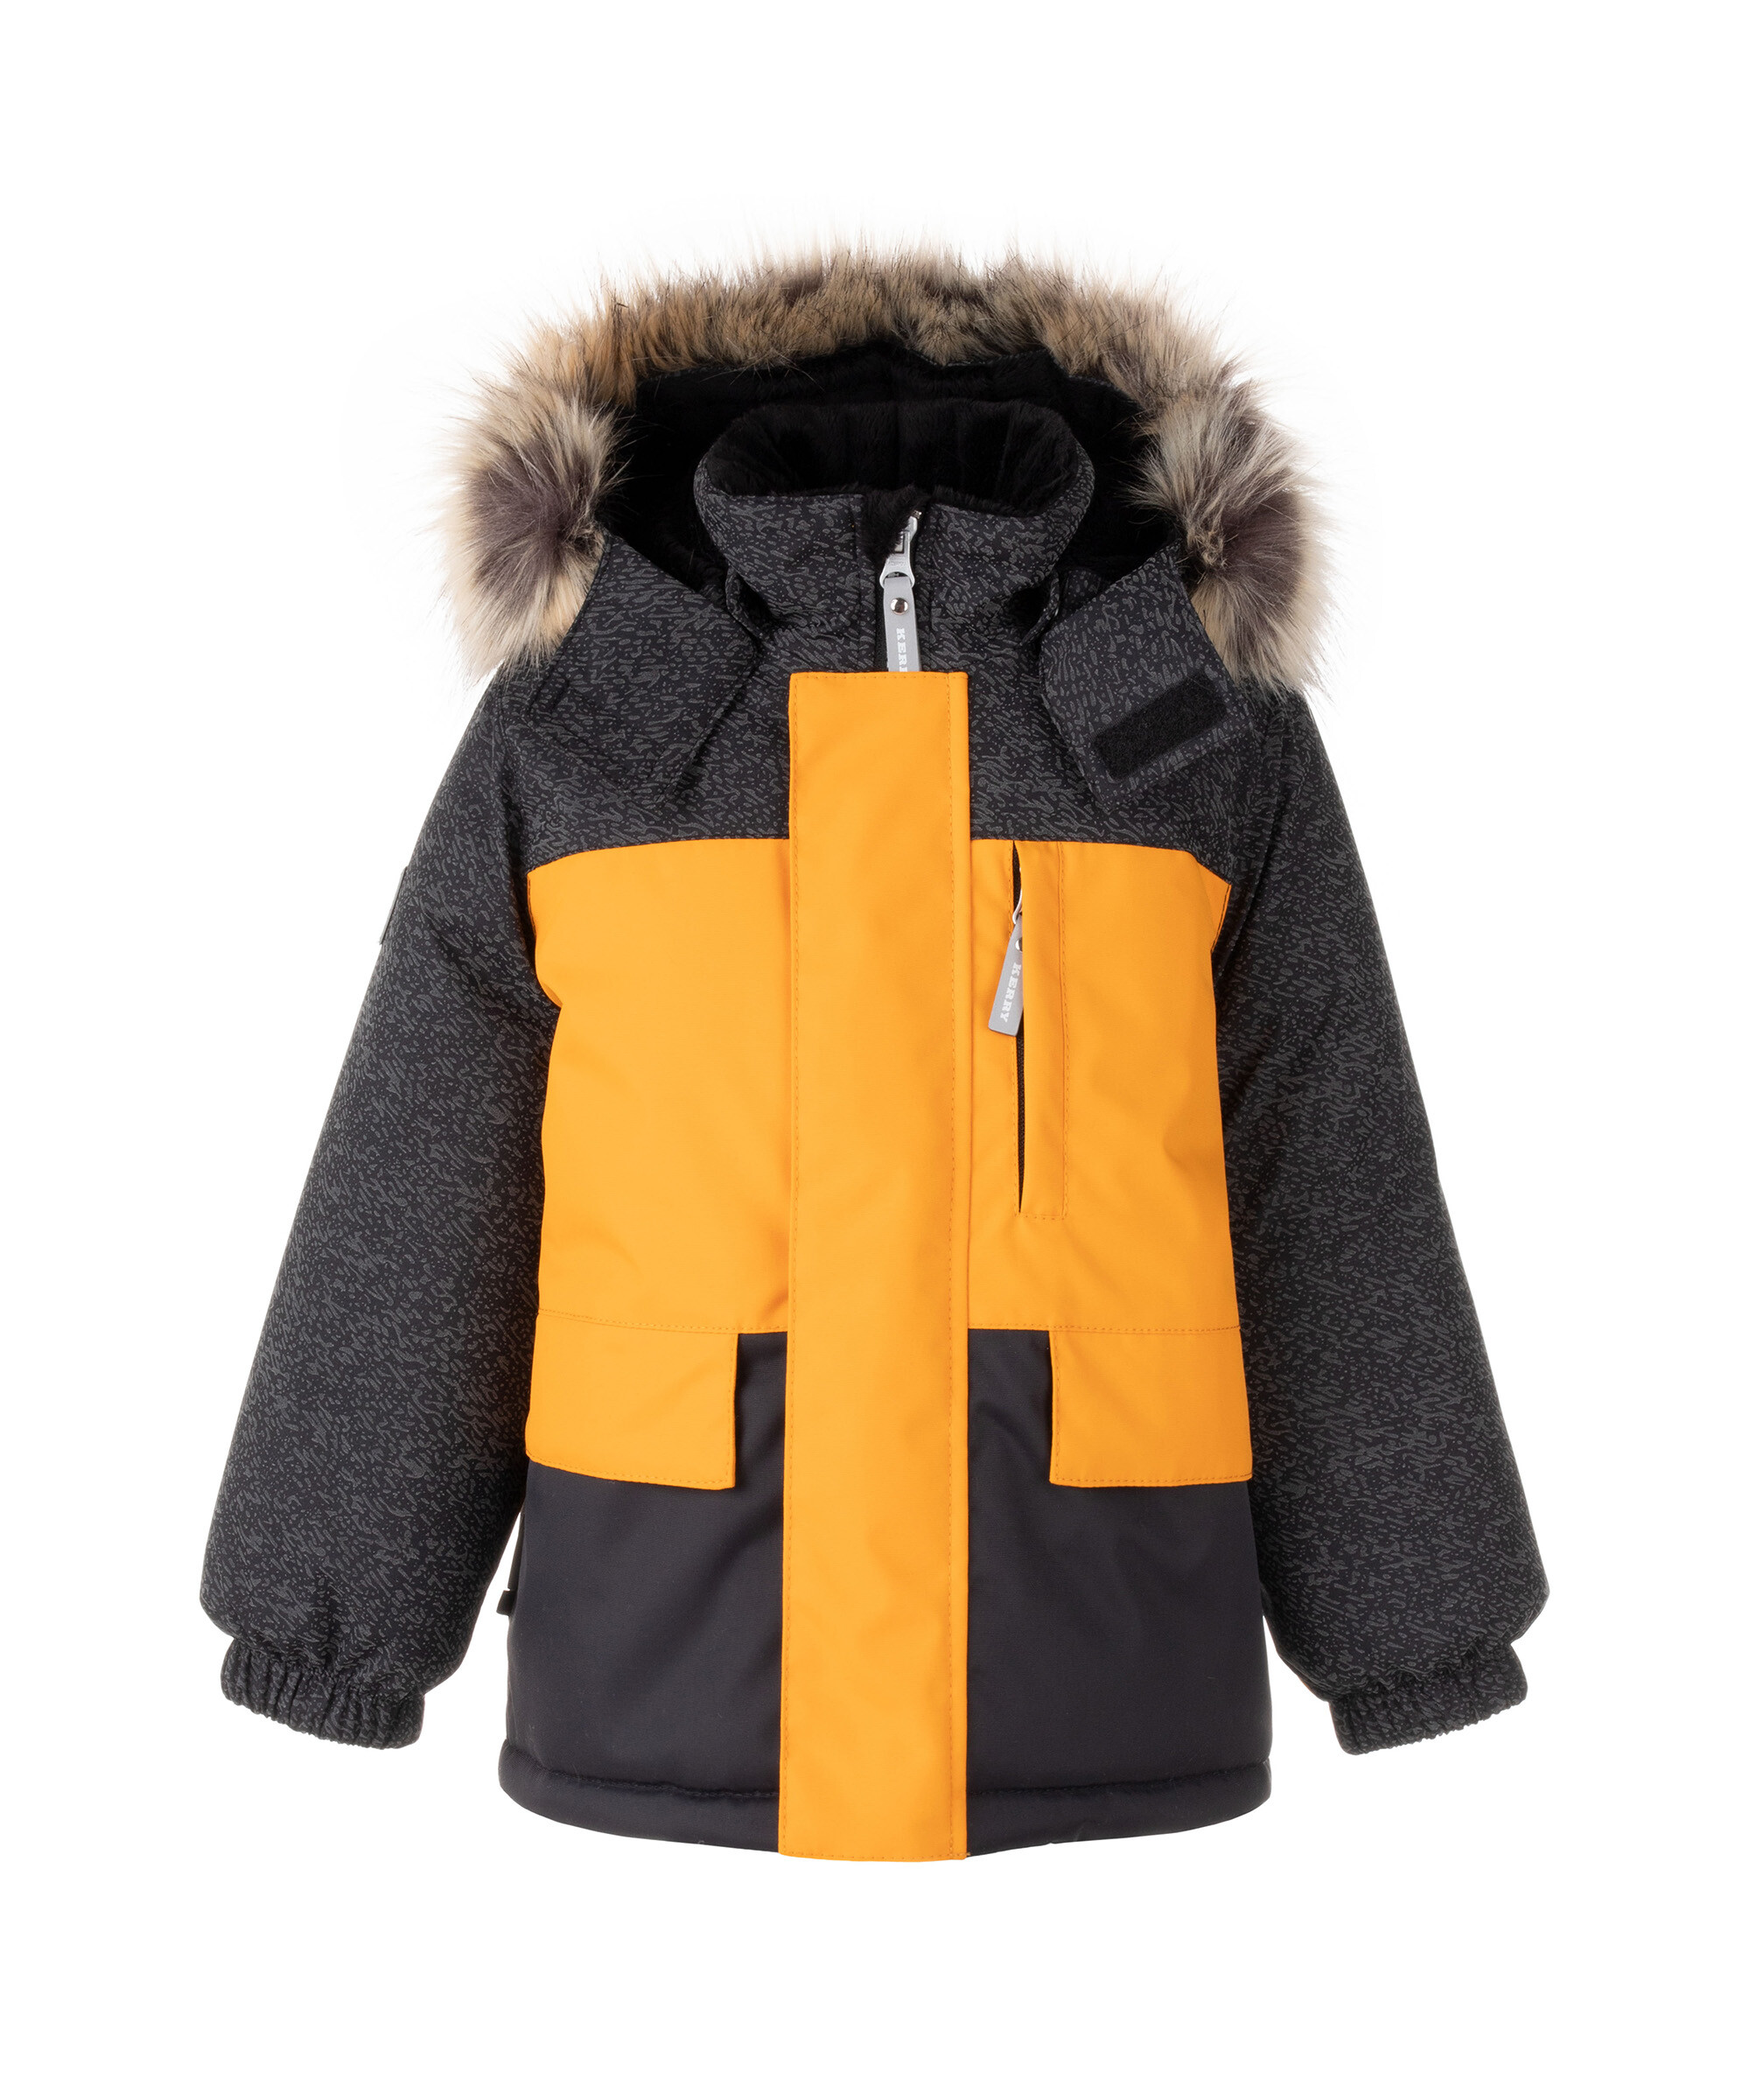 Куртка детская KERRY K22842 MC цв. черный; желтый р. 104 серая шапка с отделкой стразами joli bebe детская